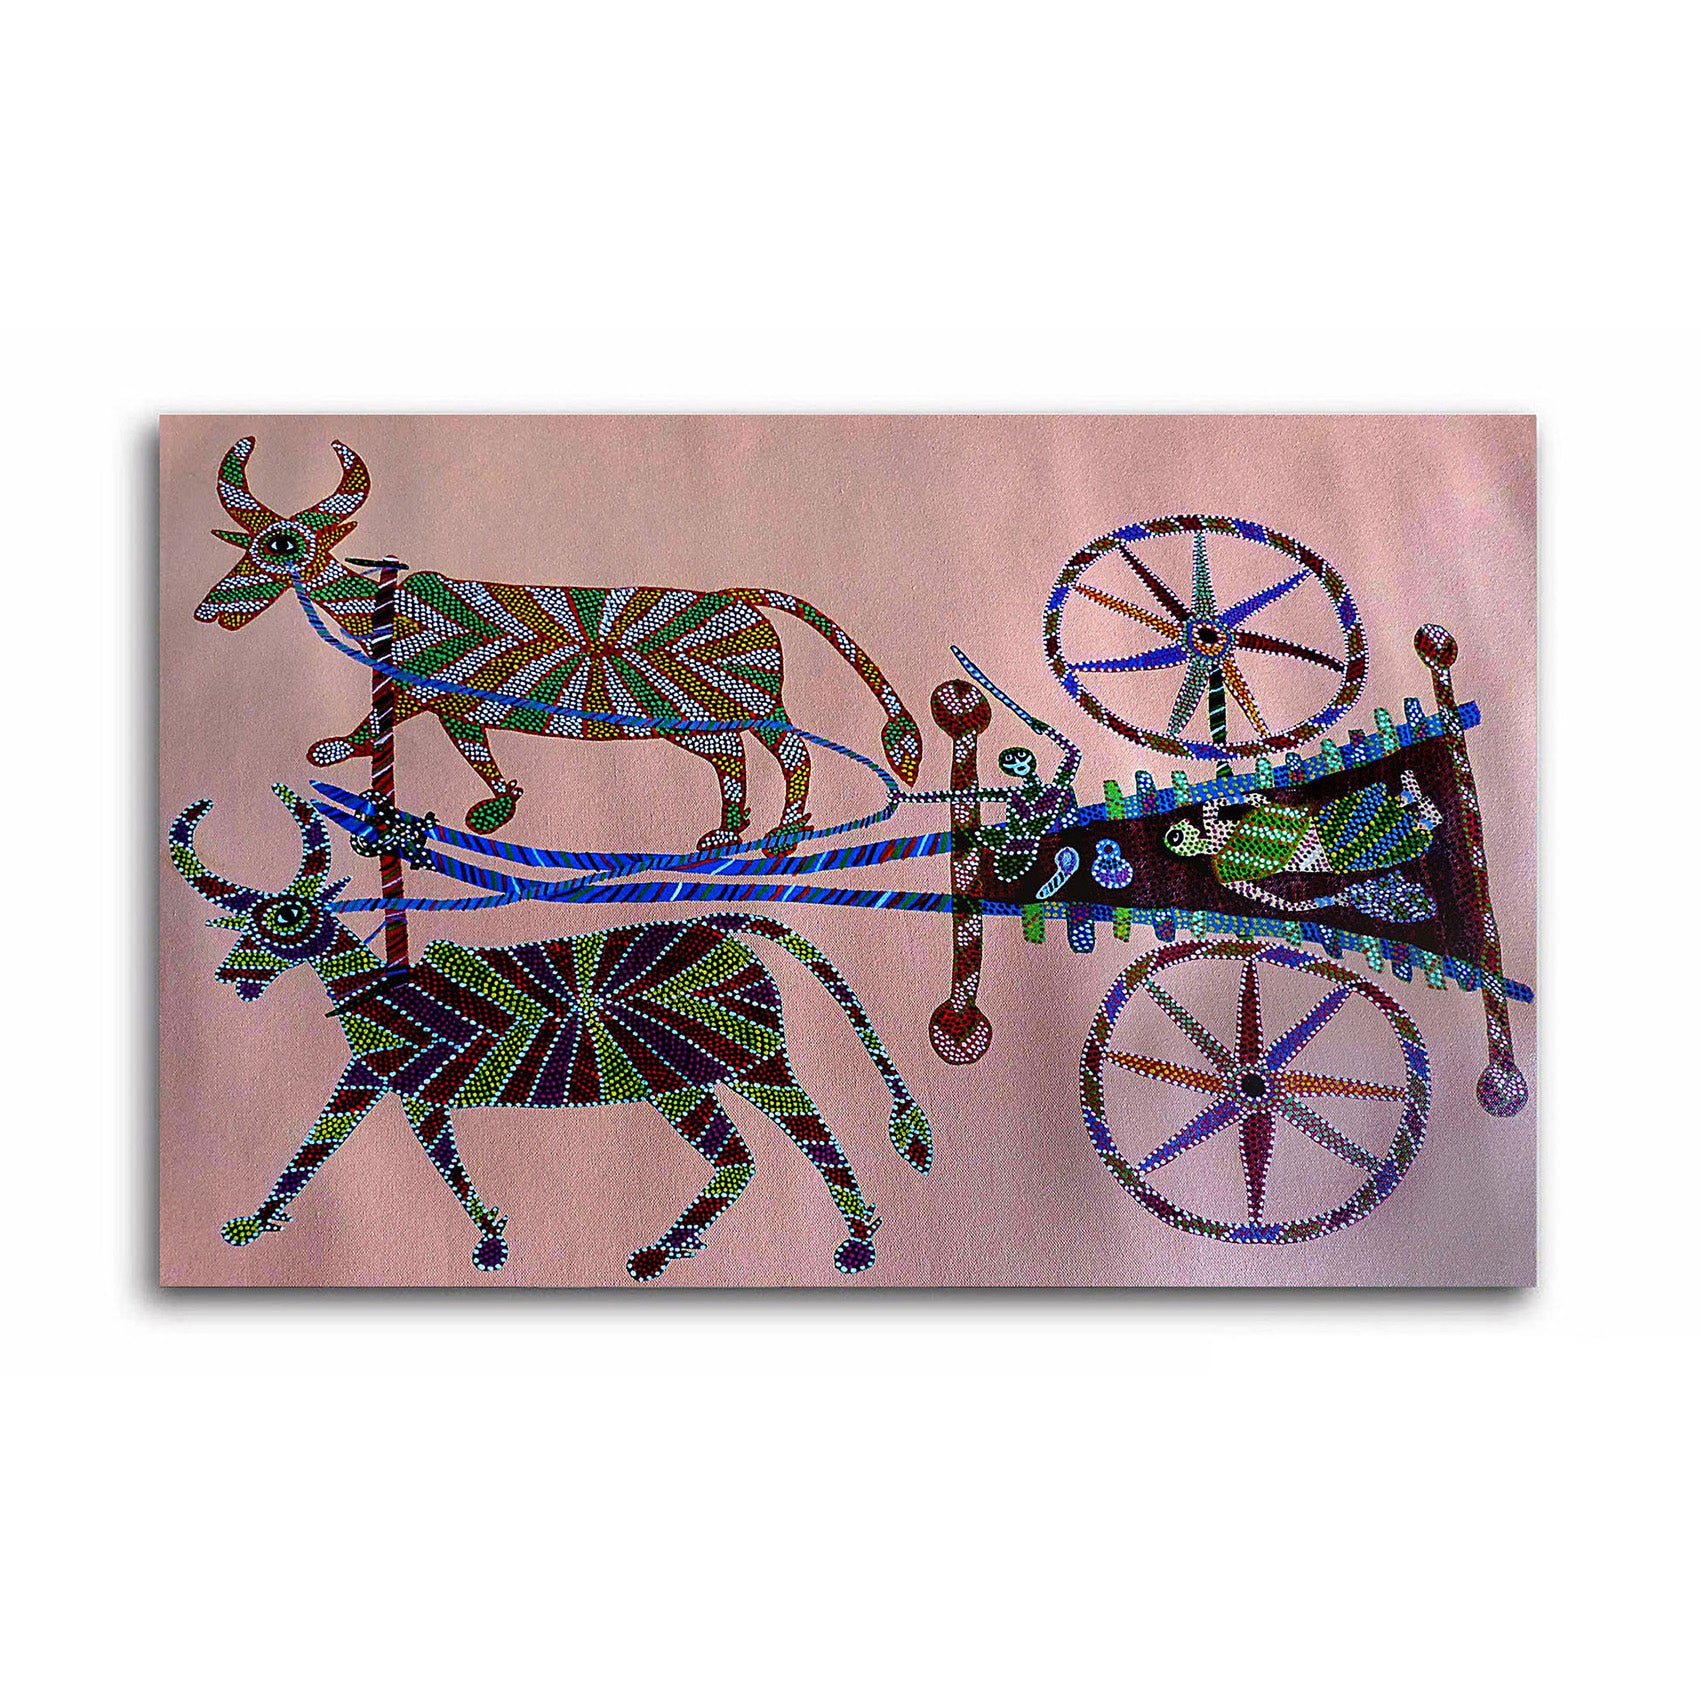 A Bullock cart